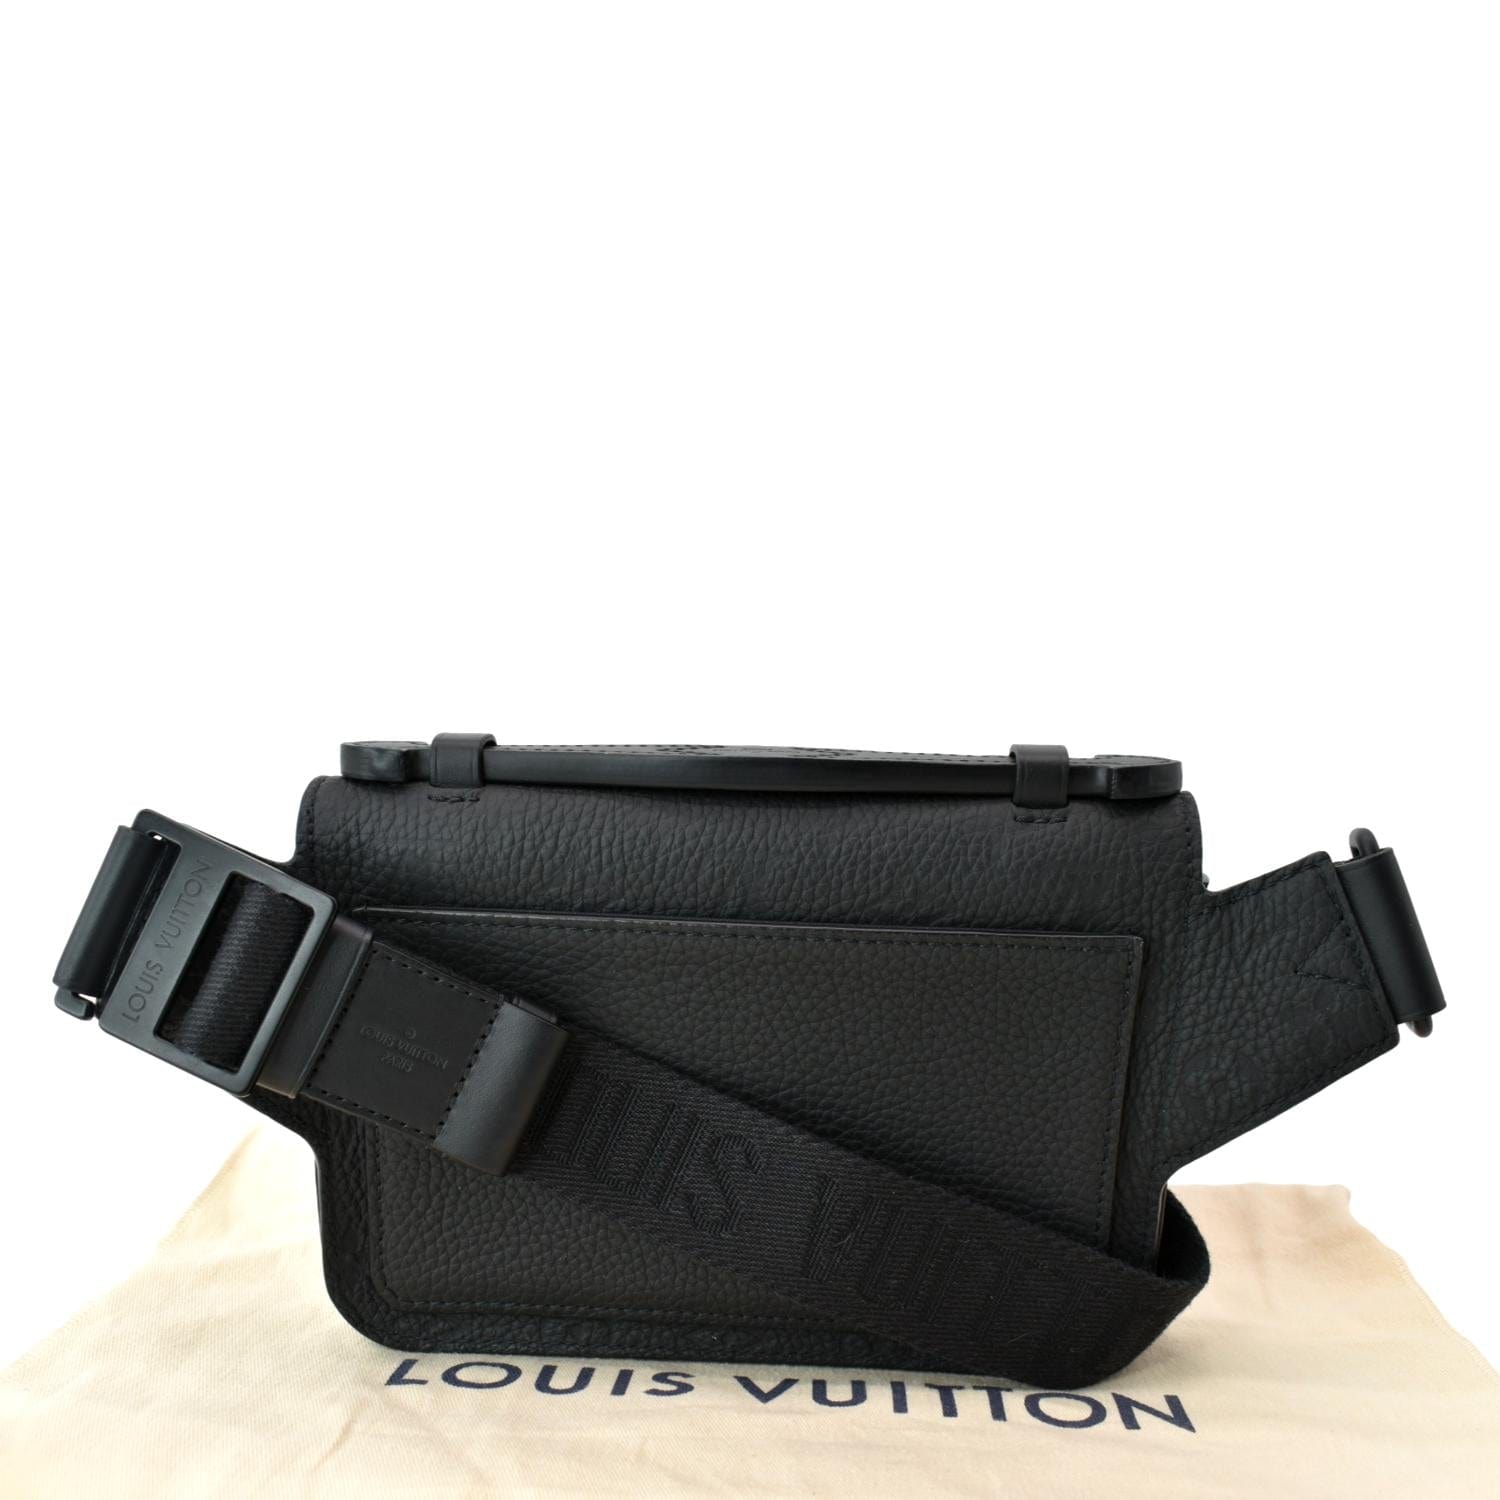 Louis Vuitton S Lock Shoulder Bag